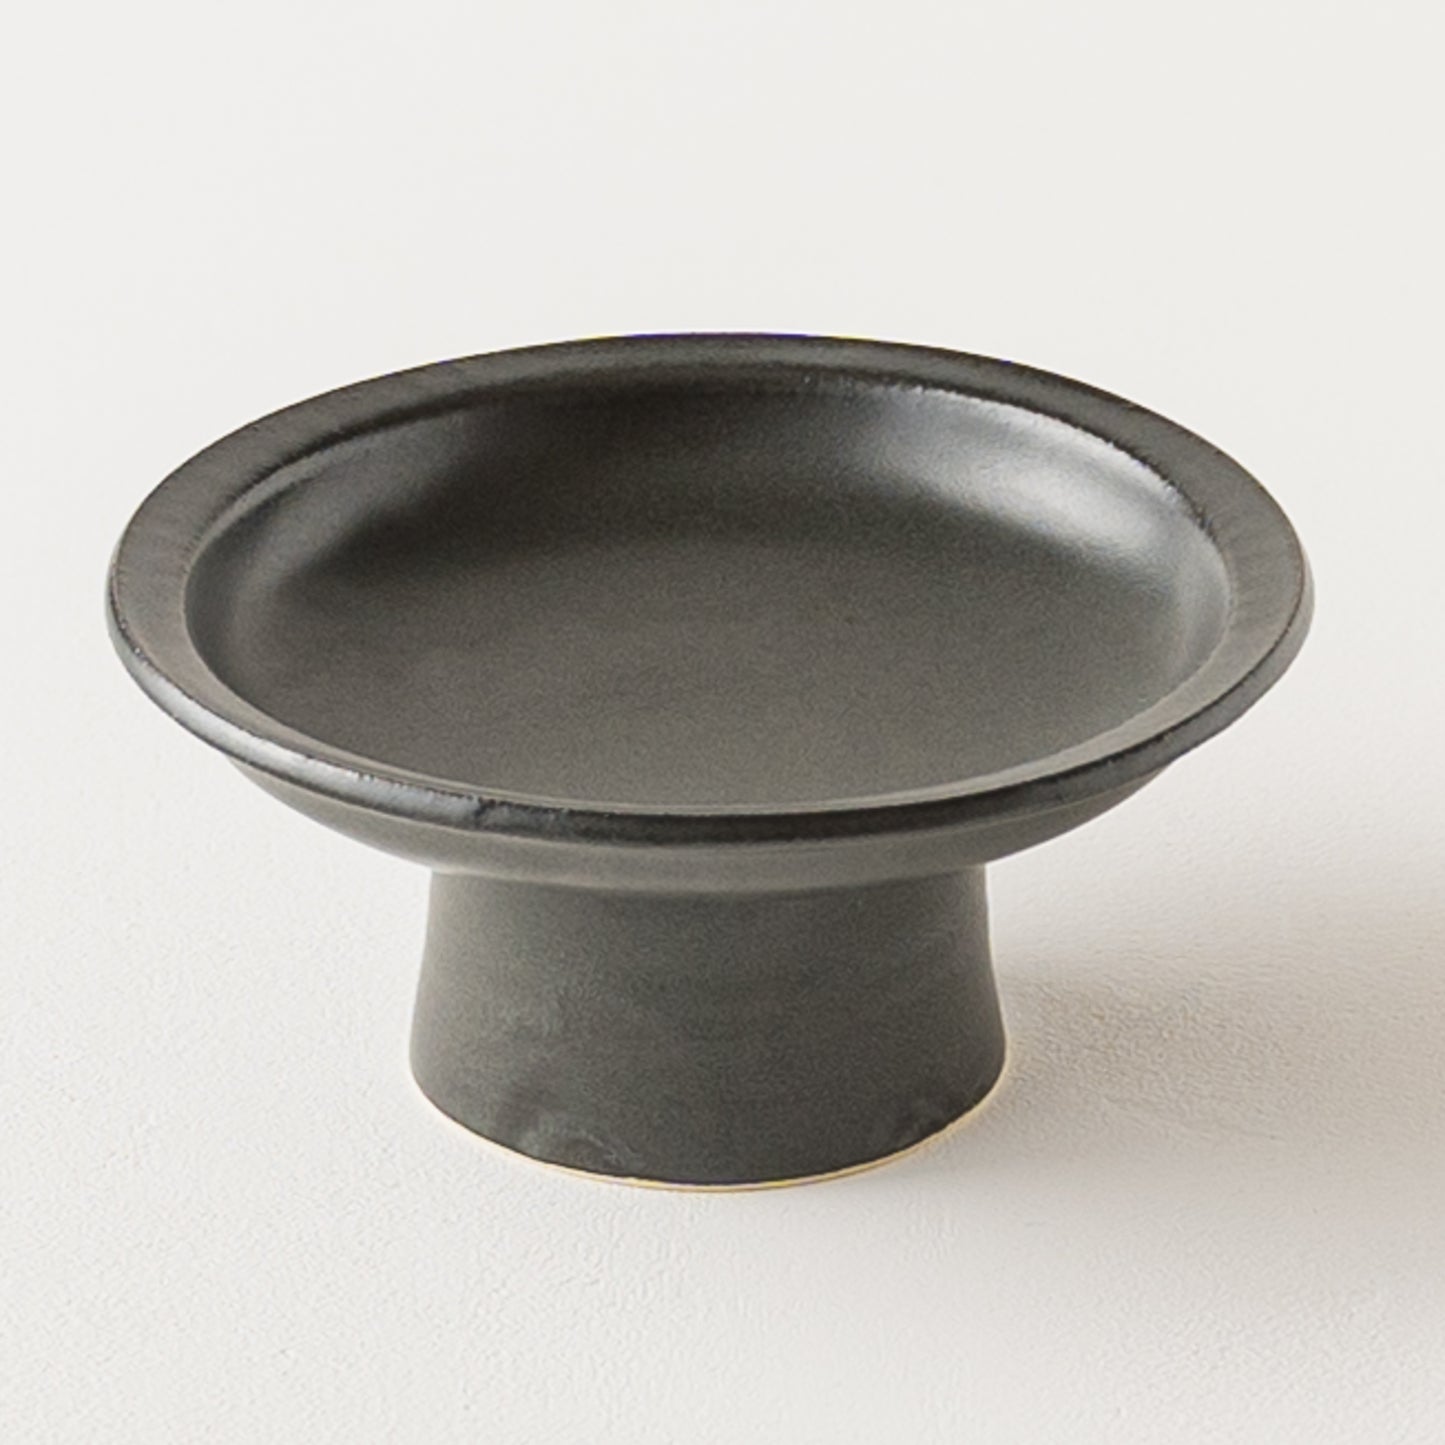 お刺身やチーズなど載せると素敵に映えるyoshida potteryの高杯皿